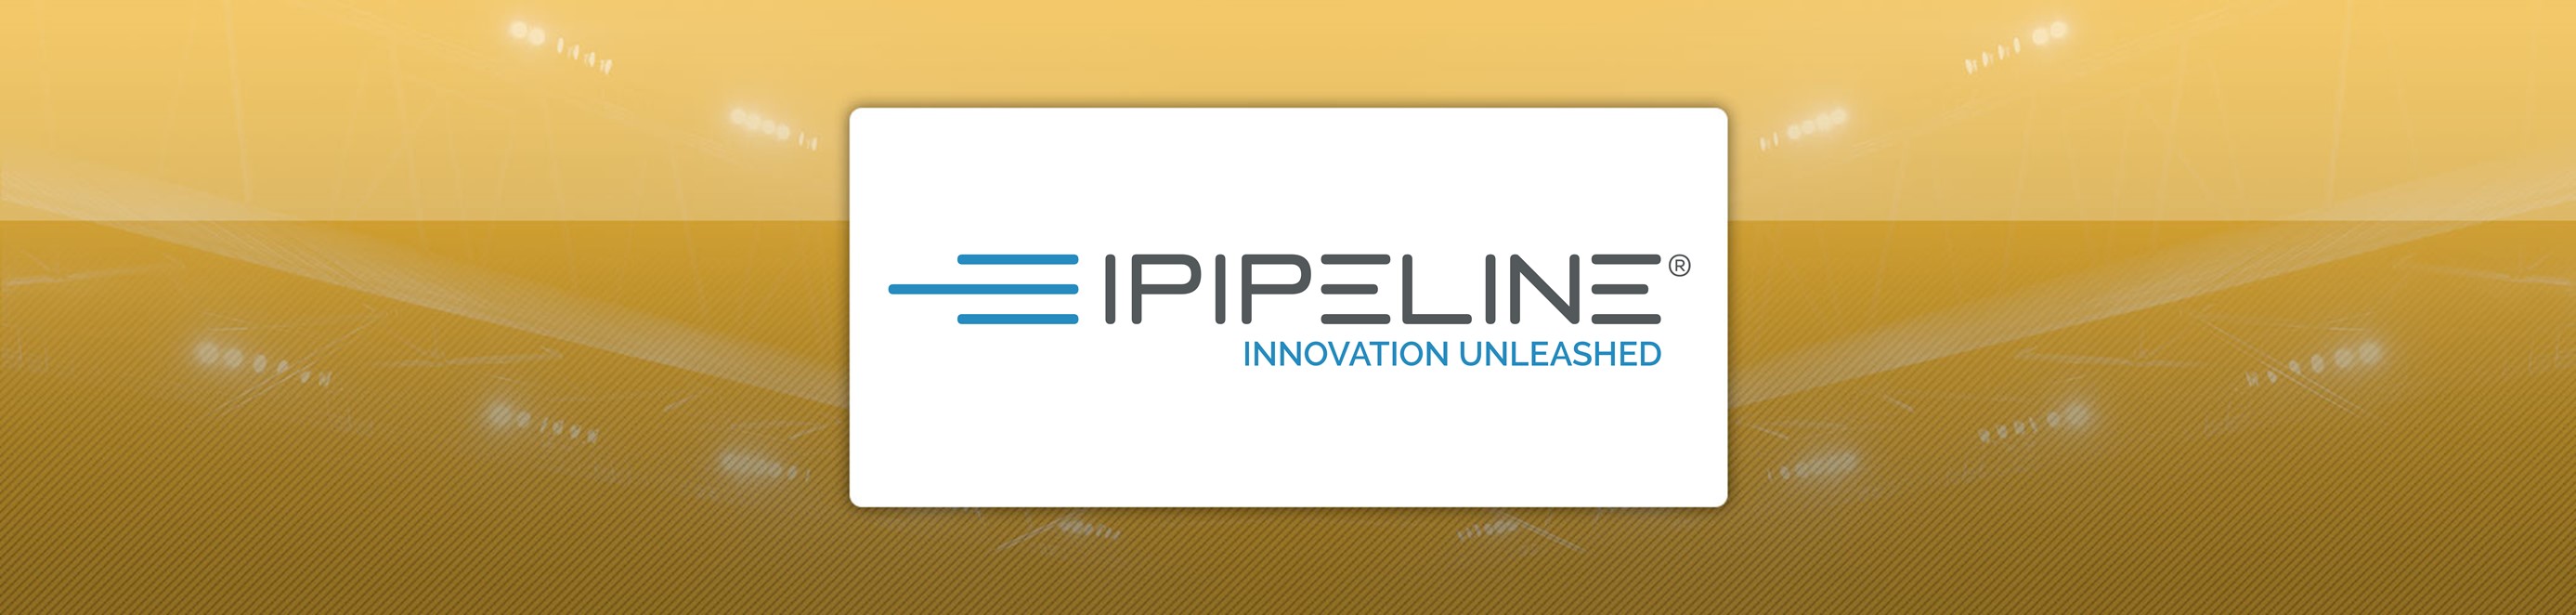 iPipeline Acquires Canadian Solutions Provider Bluesun - iPipeline